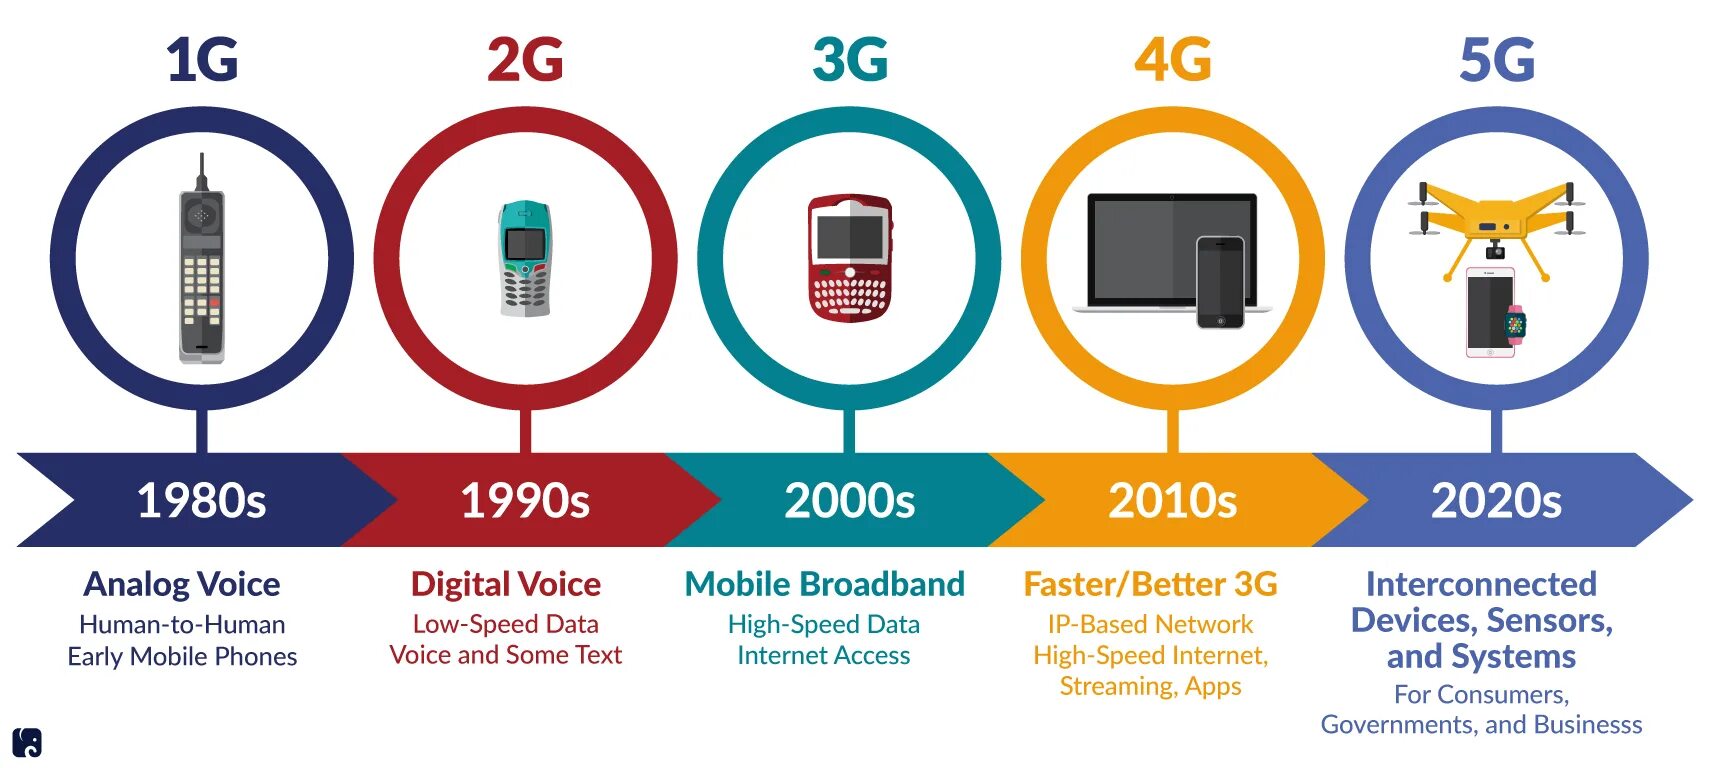 Поколения сотовой связи 2g 3g и 4g. Технологии сотовой связи 2g 3g 4g. 4g стандарты сотовой сети. Сотовая связь 1g 2g 3g 4g 5g. Почему не видит 5g